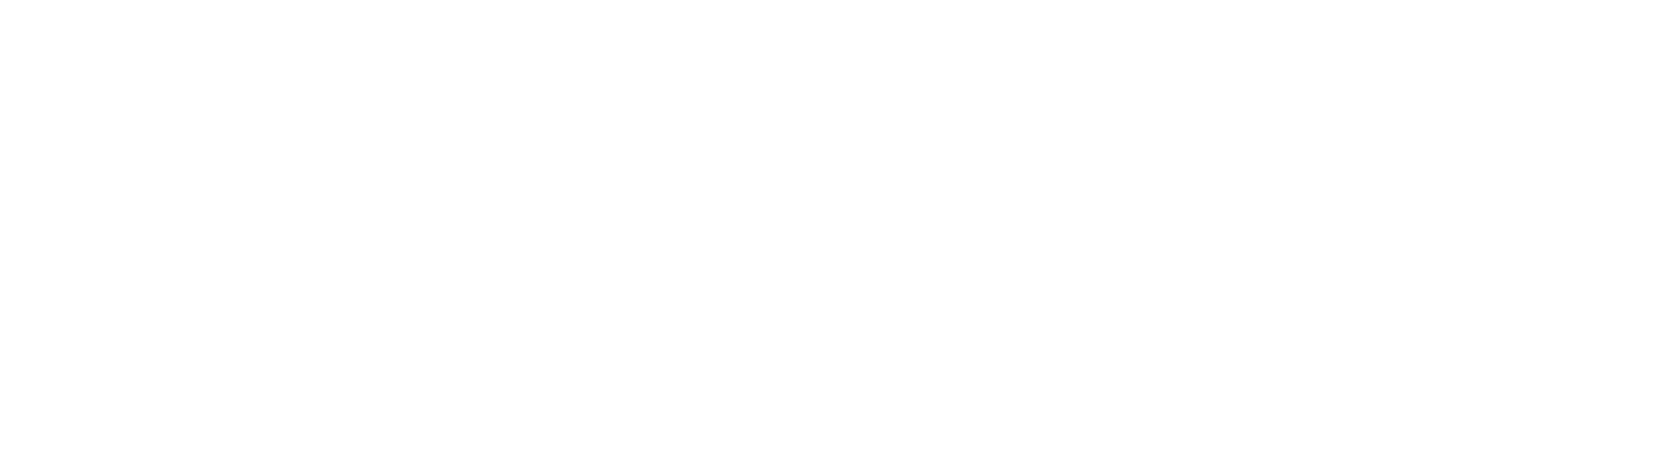 Nominadonan categoria Back Office: Barbara (Regional HR), Tamara (Manager Marketing, representando Stephanie Camacho)   